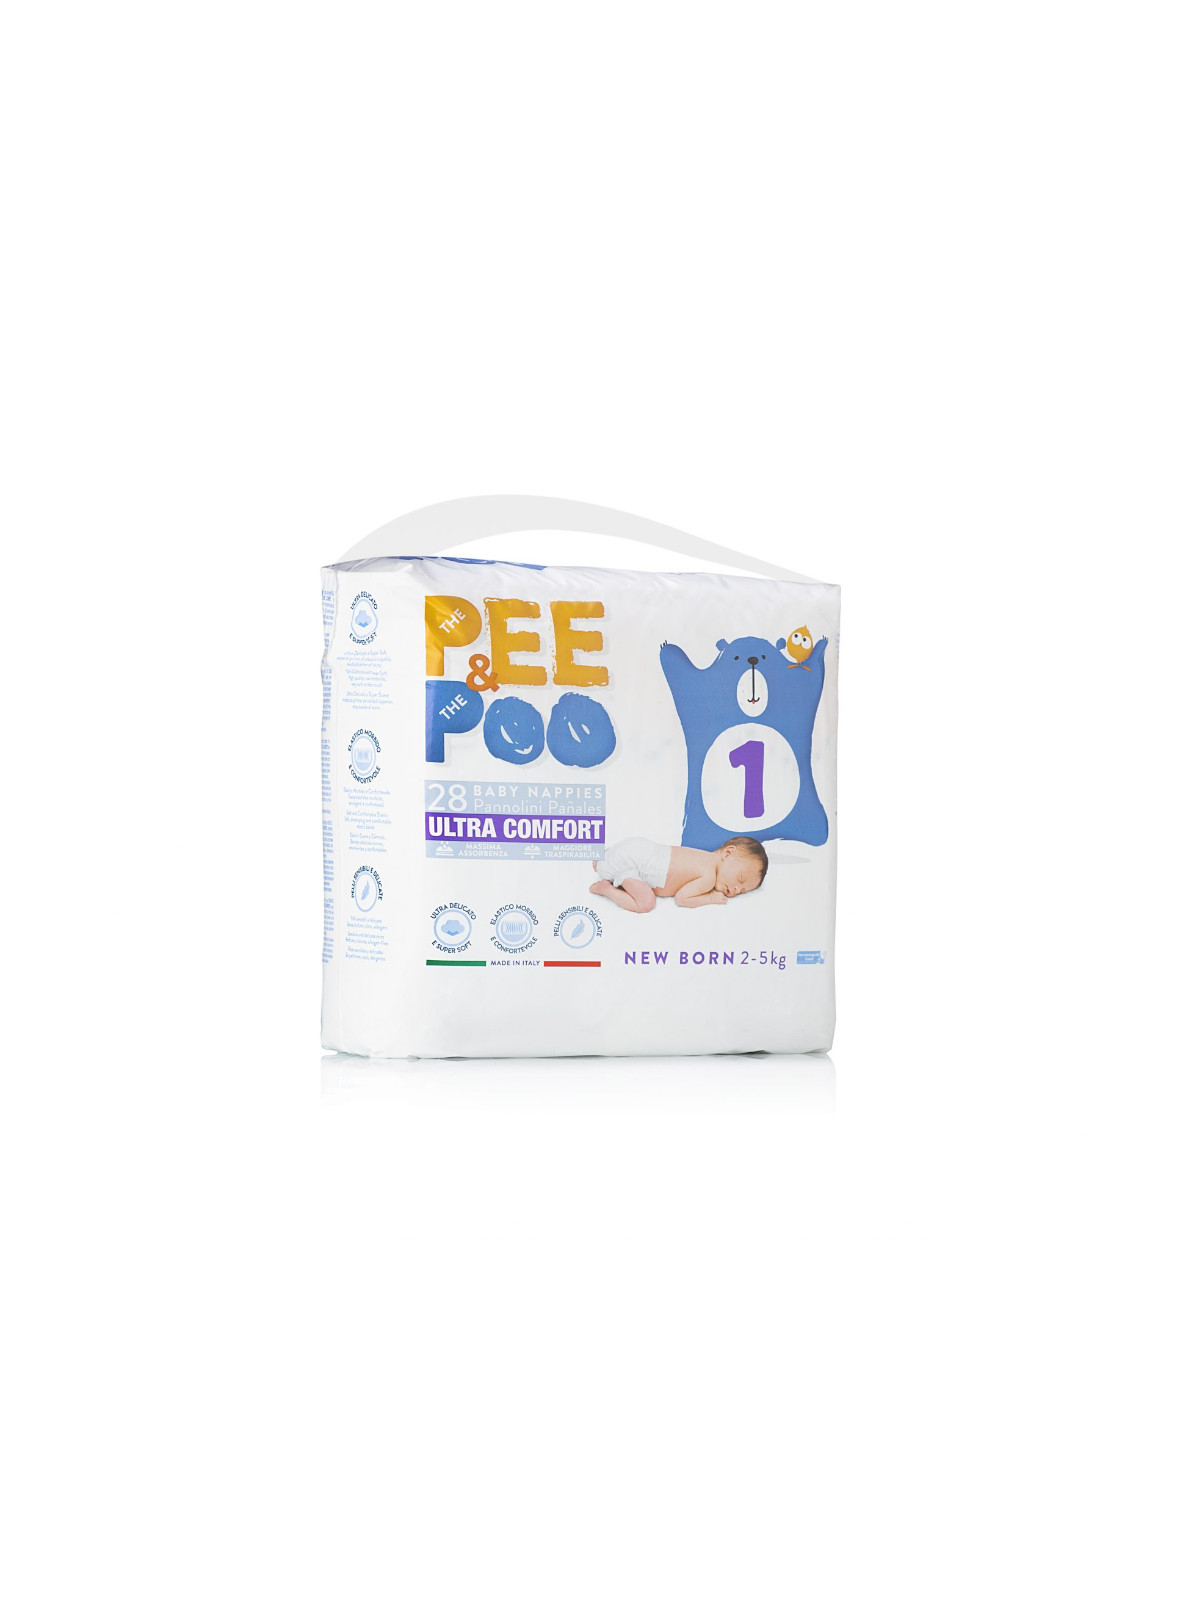 Pee&amp;poo new born taglia 1 - 28 pz - 